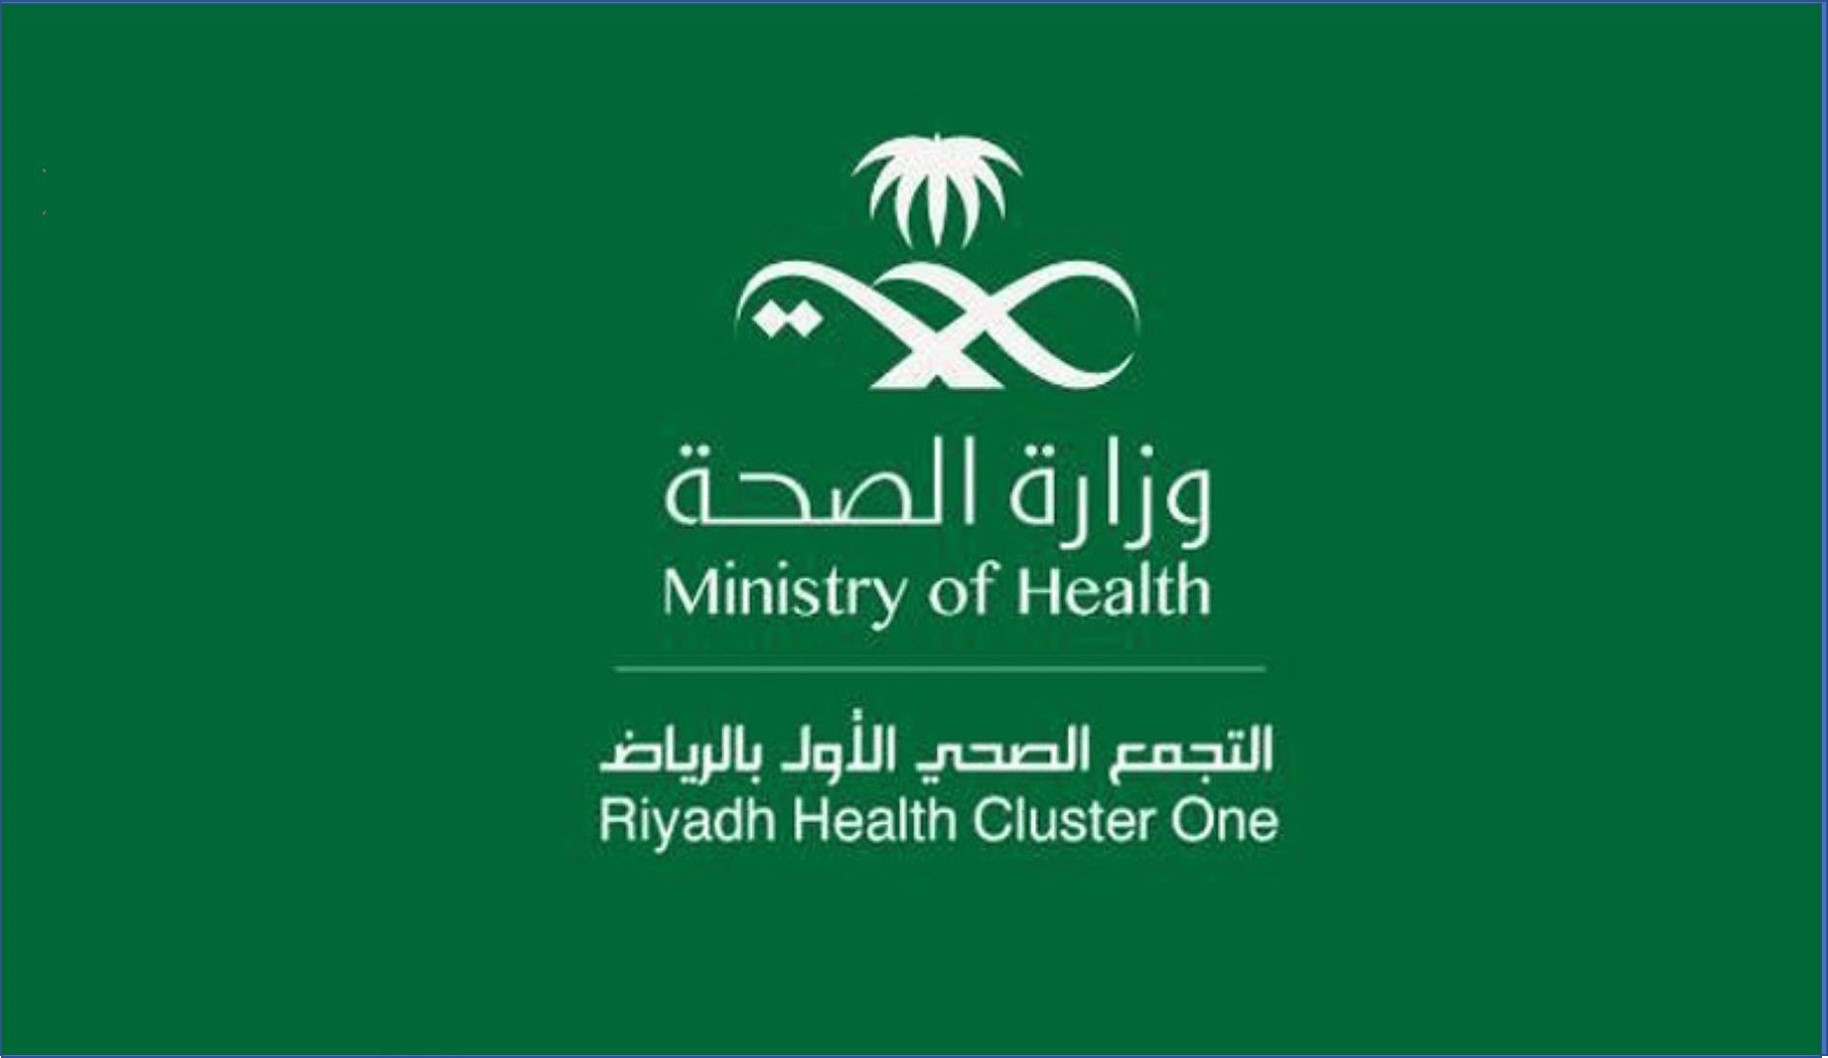 وزارة الصحة تجمع الرياض الصحي الأول تعلن فتح باب التوظيف للرجال والنساء